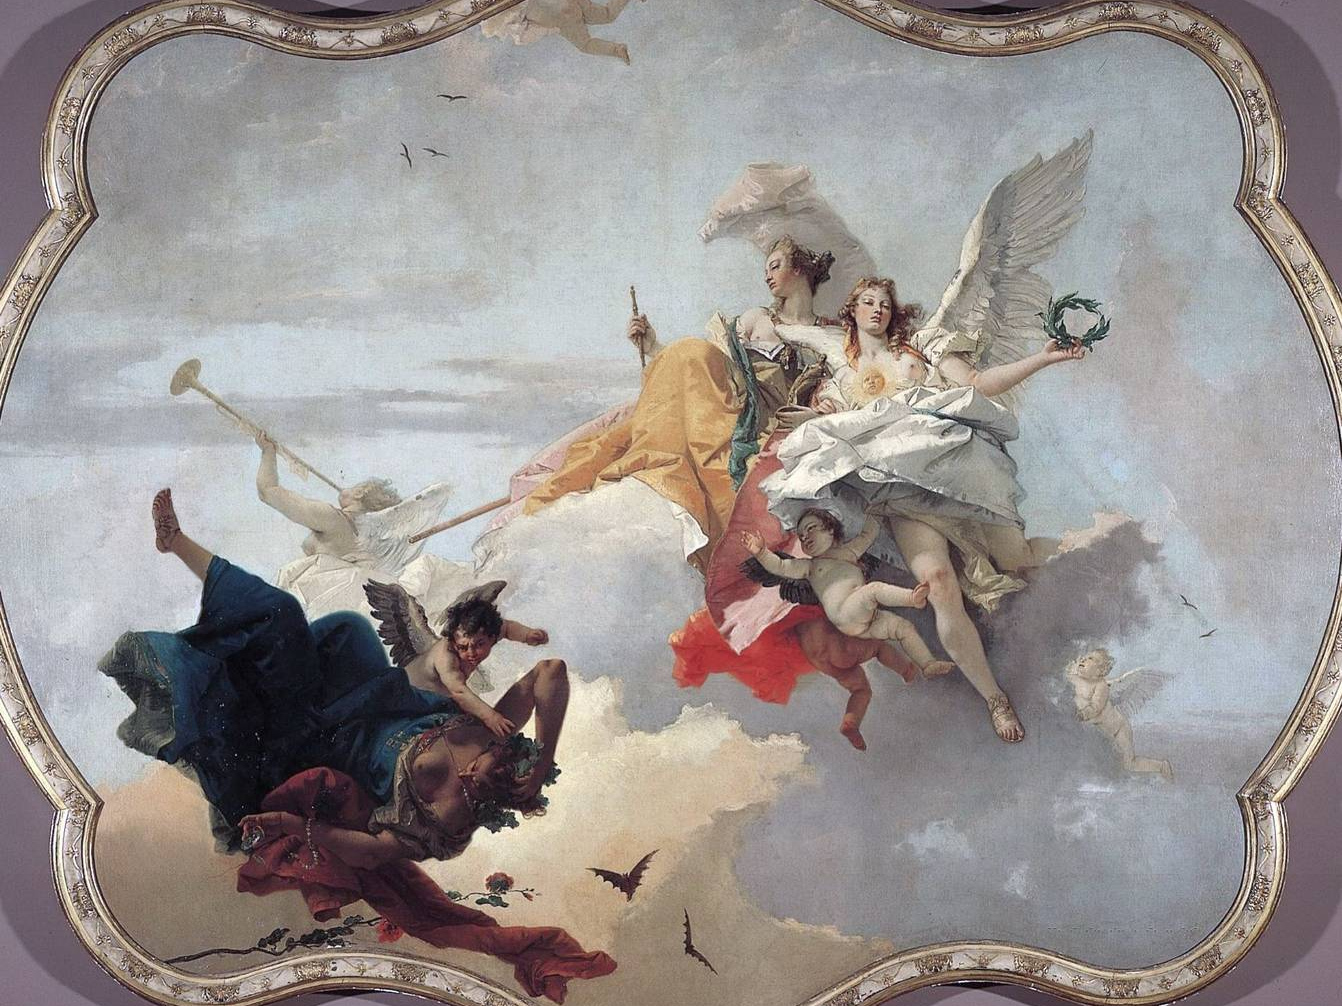 Джованни Баттиста Тьеполо. Триумф Добродетели и Благородства над Невежеством. 1740-1750